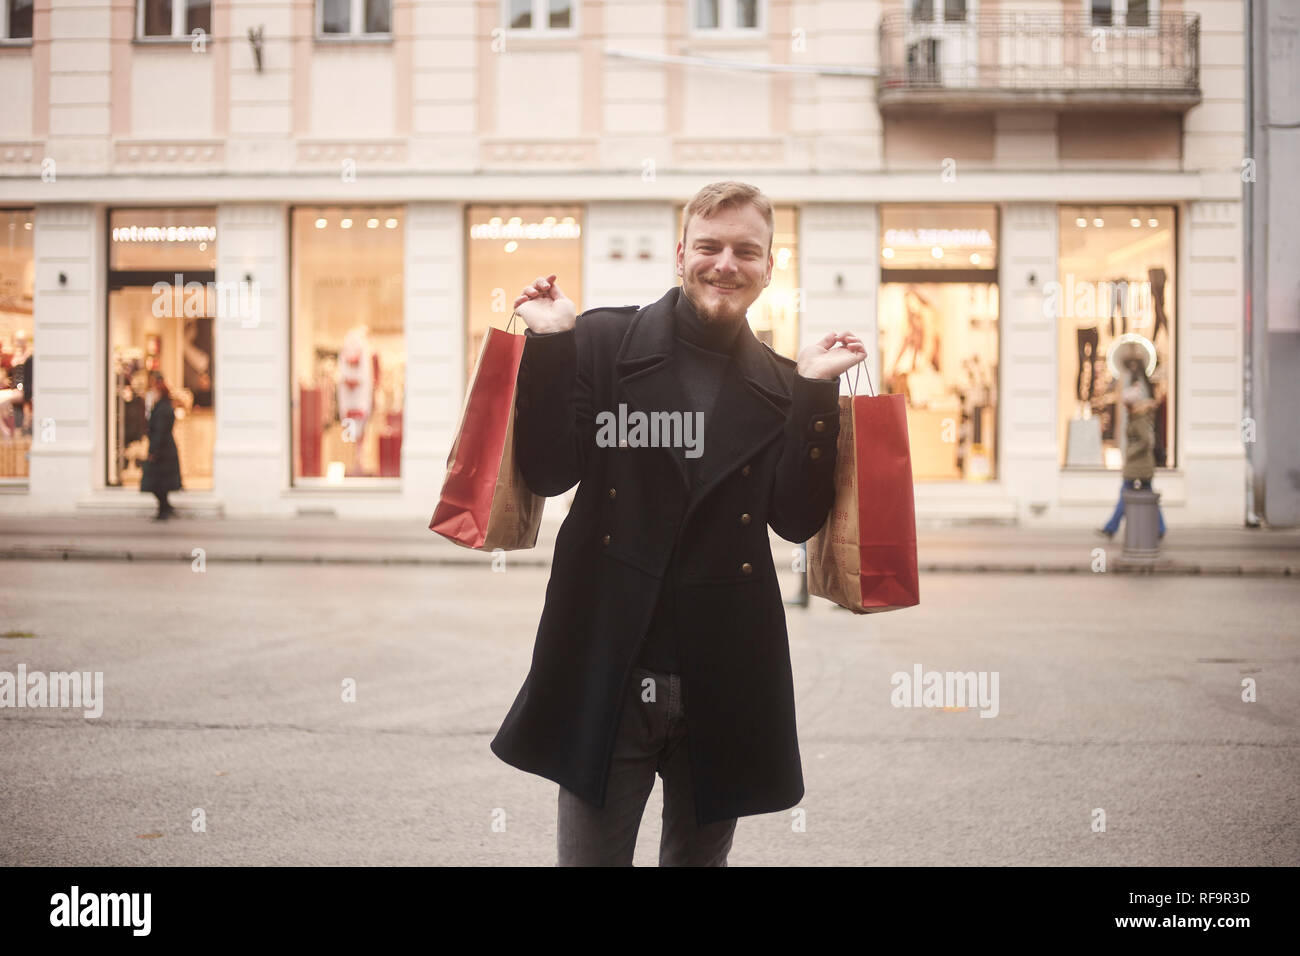 Un joven sonriente y feliz el hombre, 20-29 años de edad, en una calle peatonal, mirando a la cámara mientras mantiene dos bolsas de la compra con los brazos extendidos. S Foto de stock